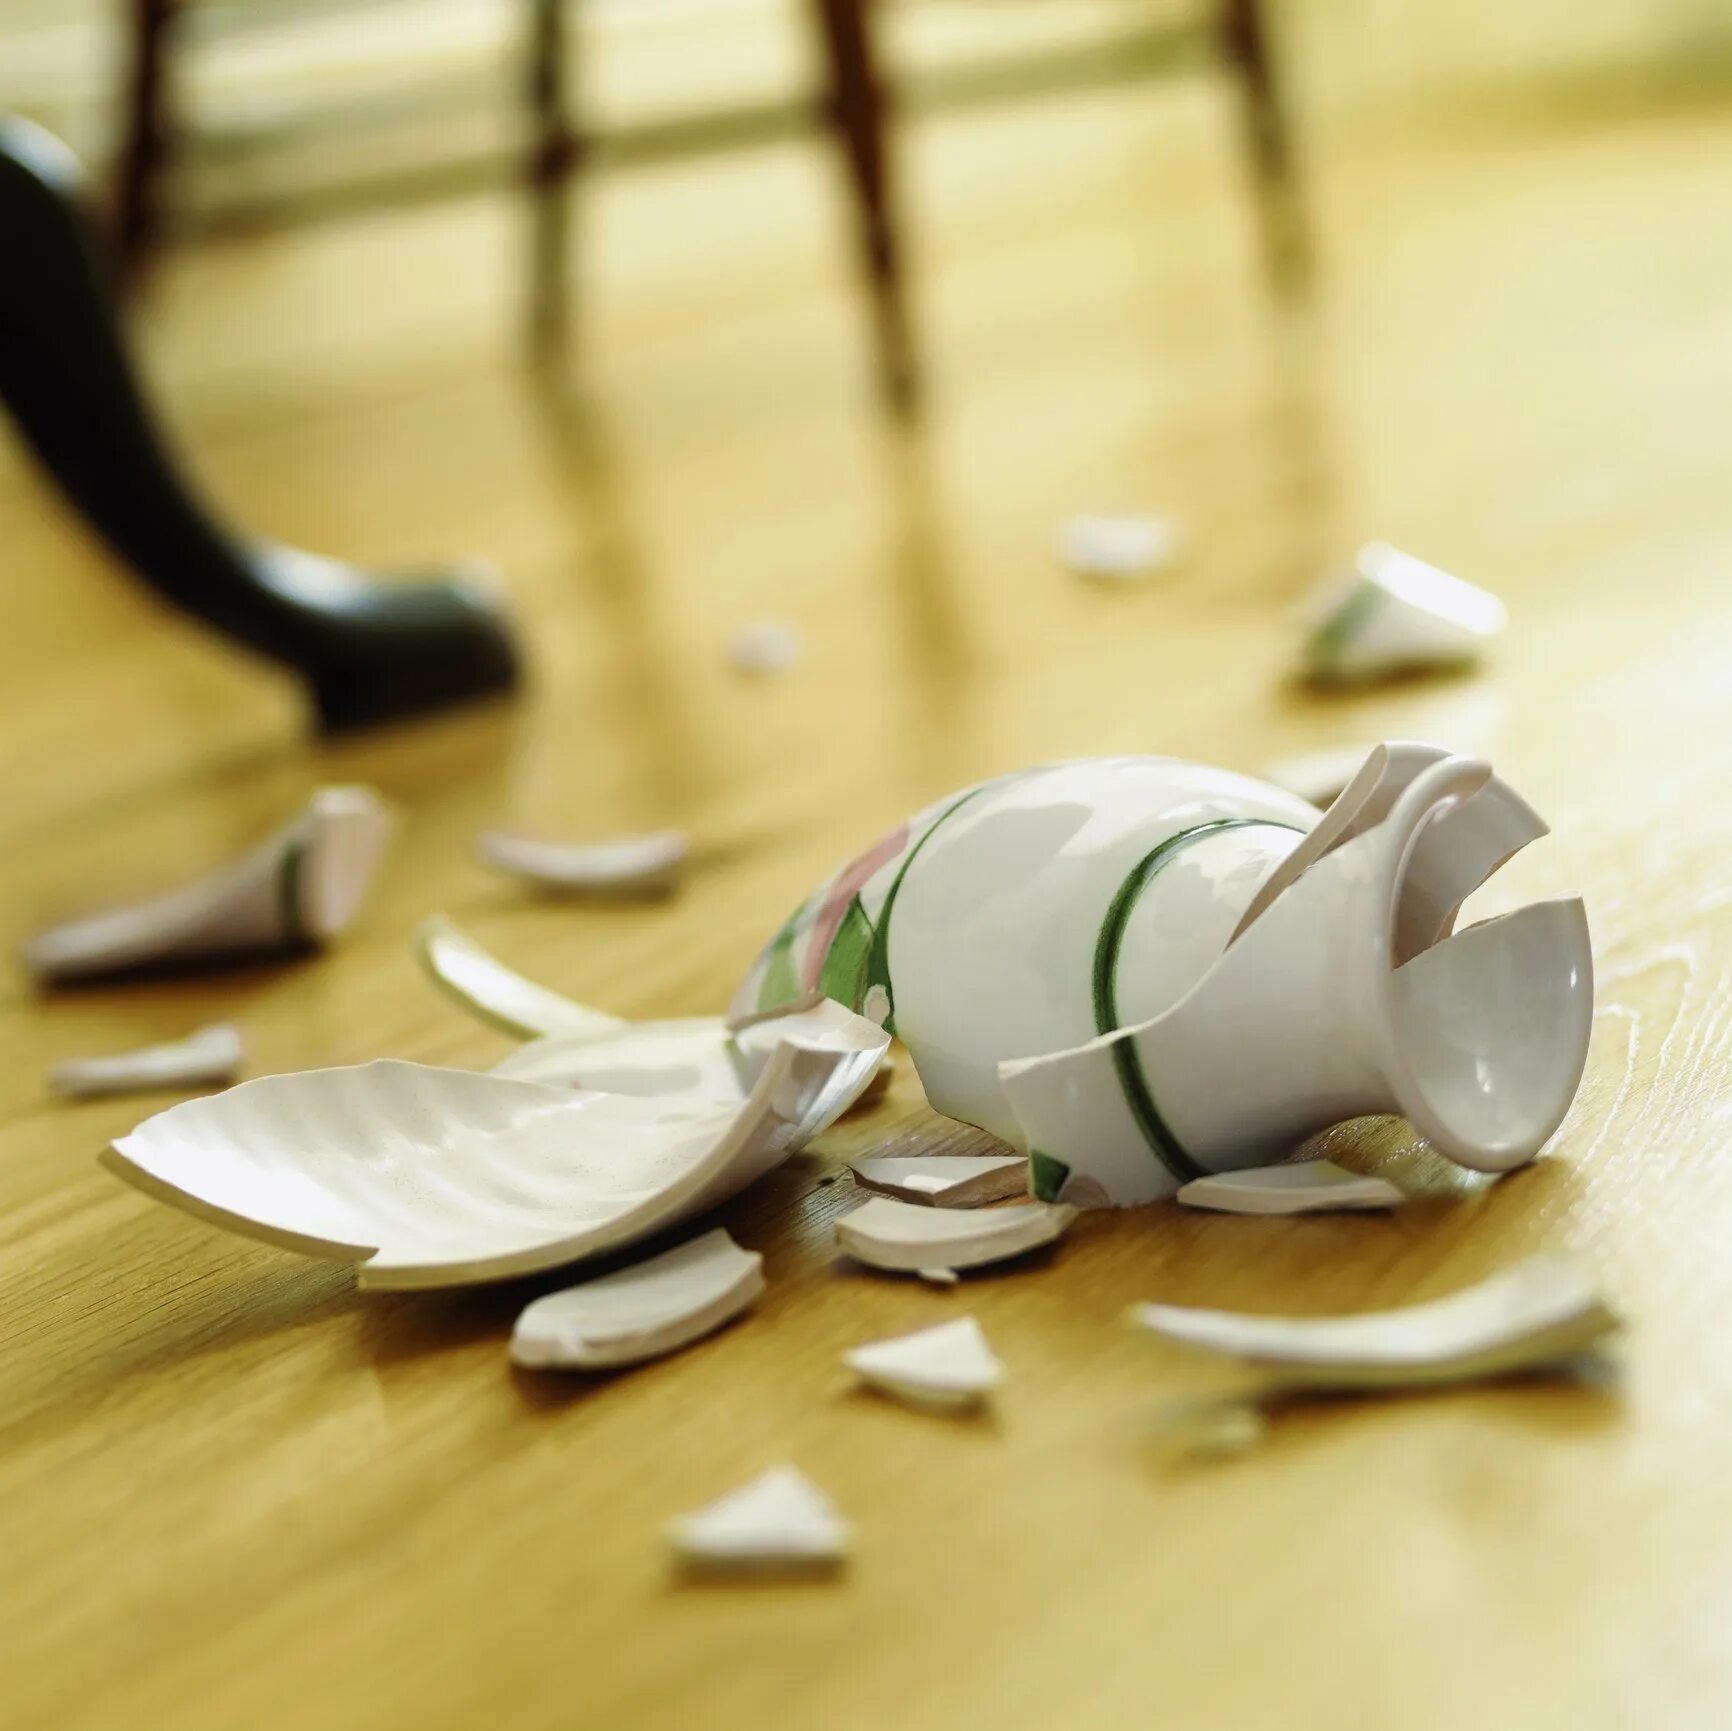 Разбивают вещи. Разбитая ваза. Разбитая посуда. Разбитая ваза на полу. Осколки вазы на полу.